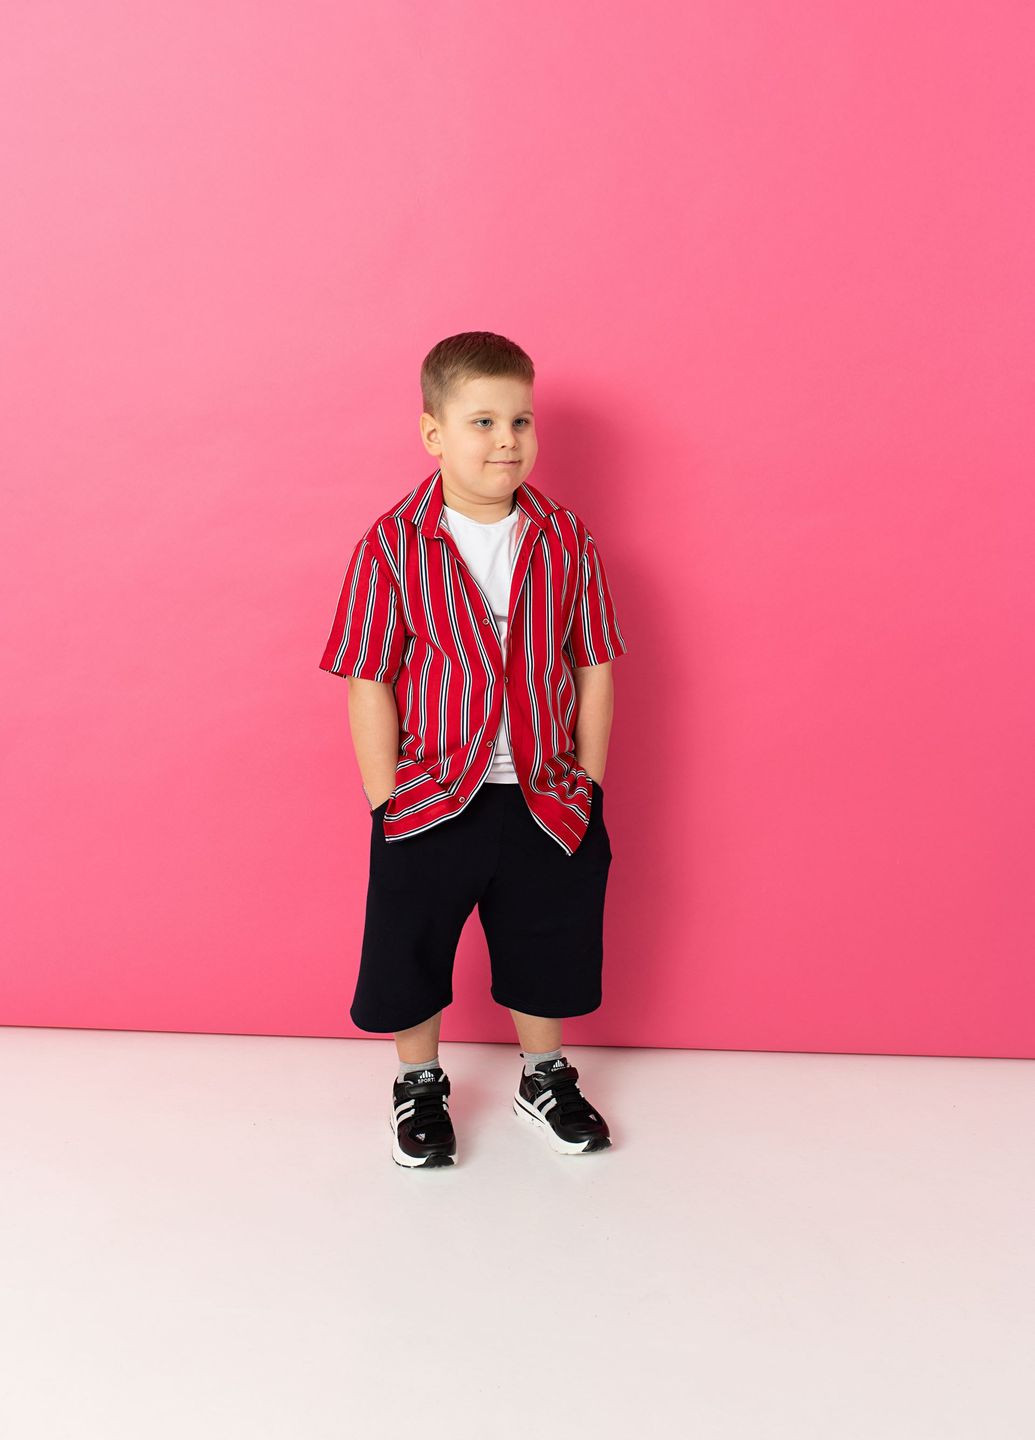 Червоний літній комплект для хлопчика сорочка + футболка + шорти червоний з чорним Yumster